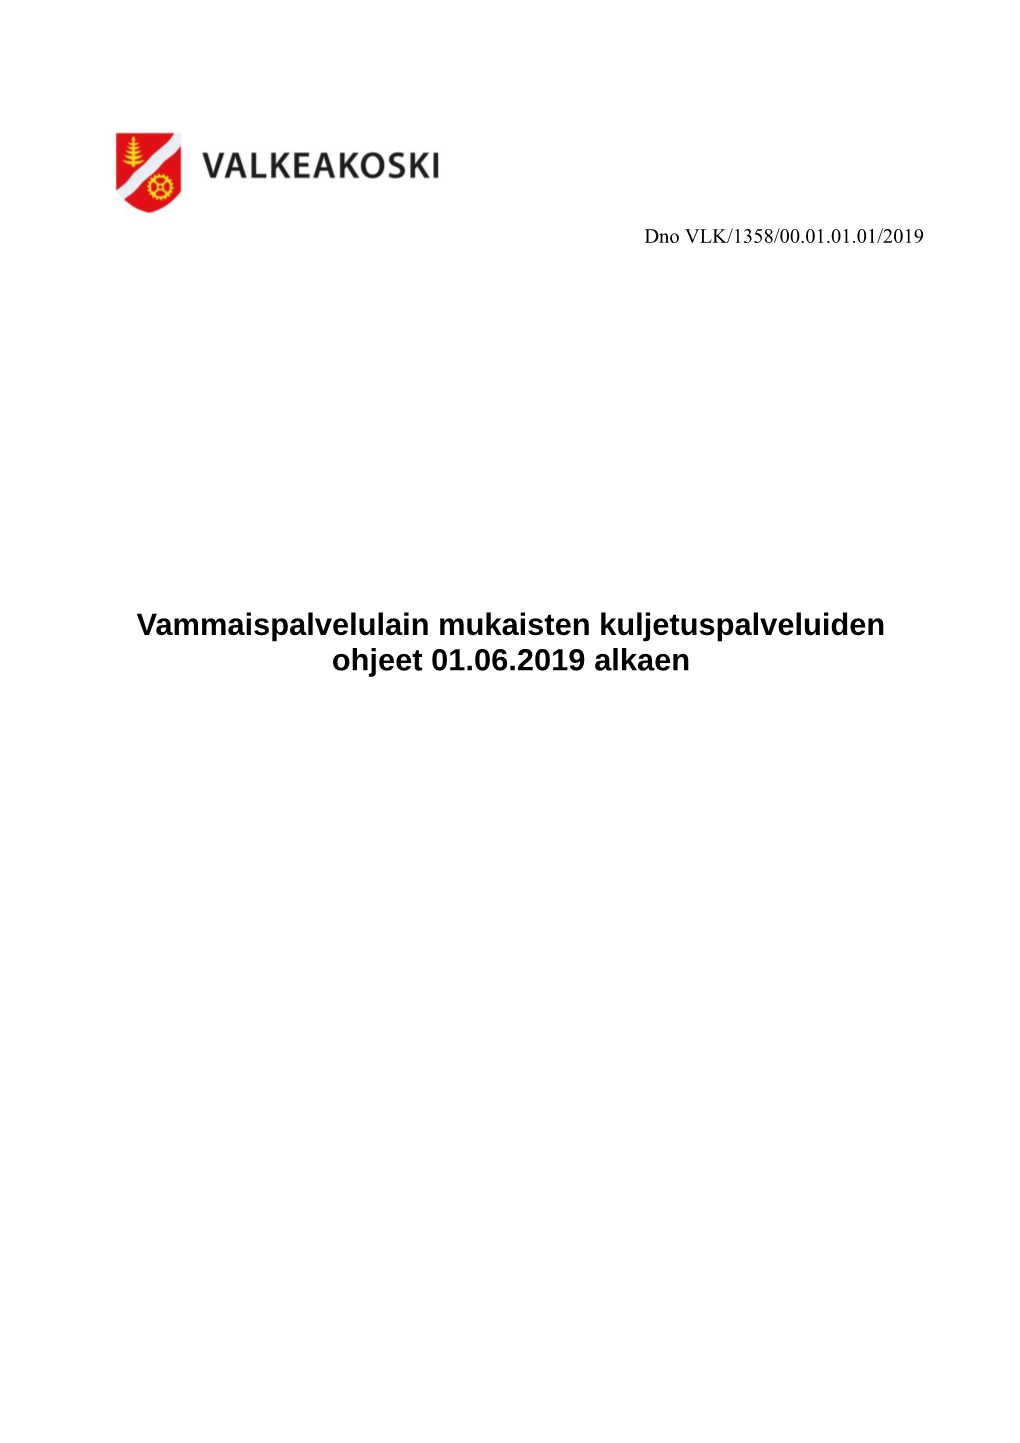 Vammaispalvelulain Mukaisten Kuljetuspalveluiden Ohjeet 01.06.2019 Alkaen 1